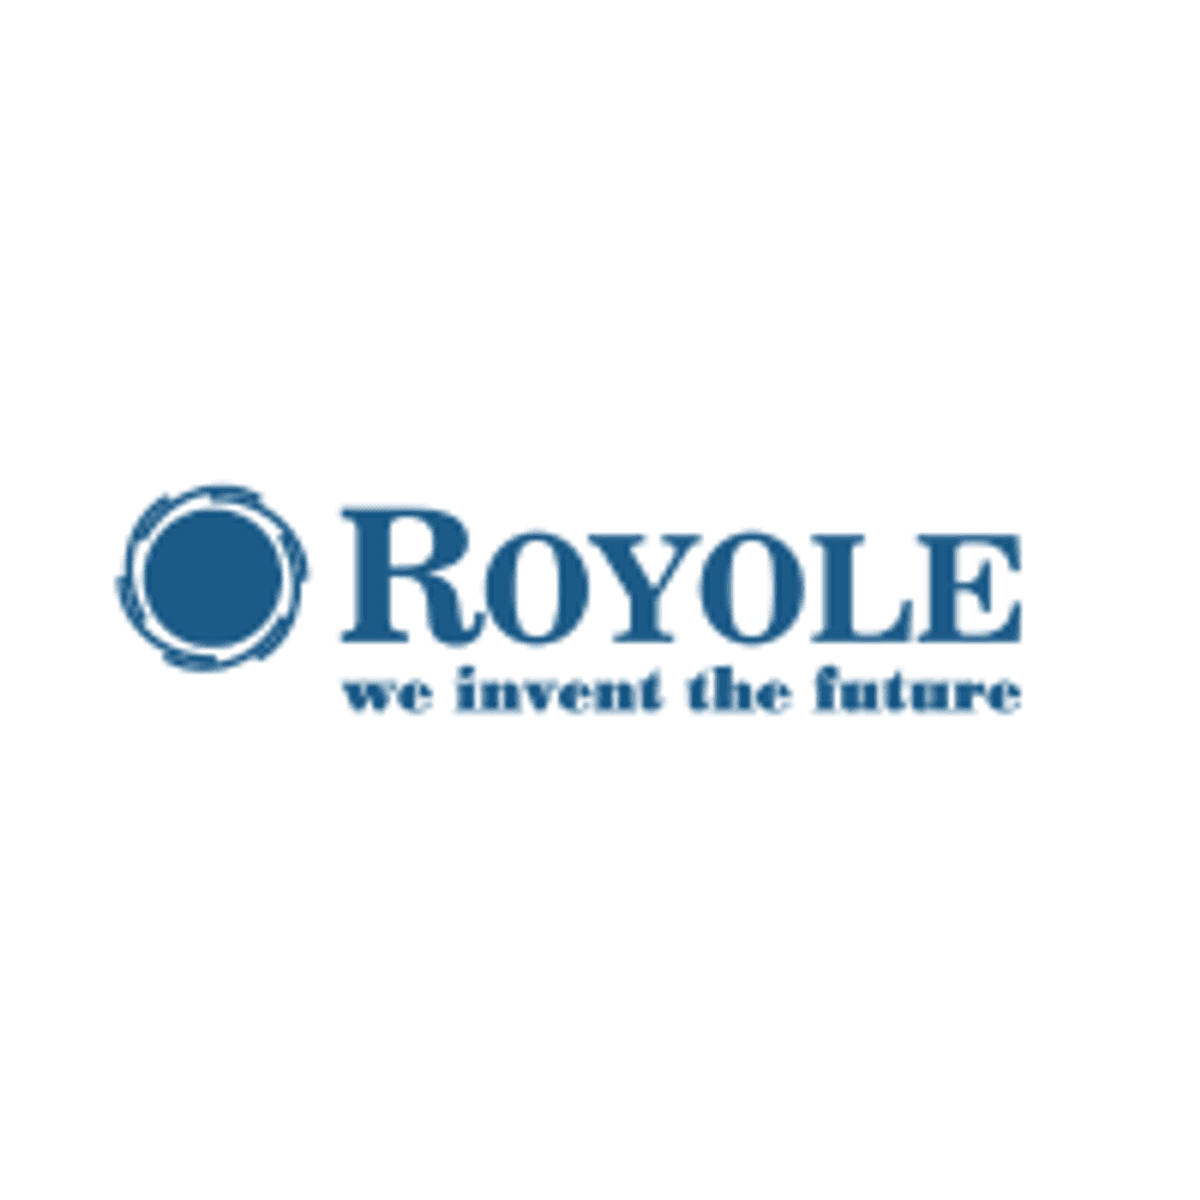 Royole haalt 800 miljoen dollar aan investeringen op image